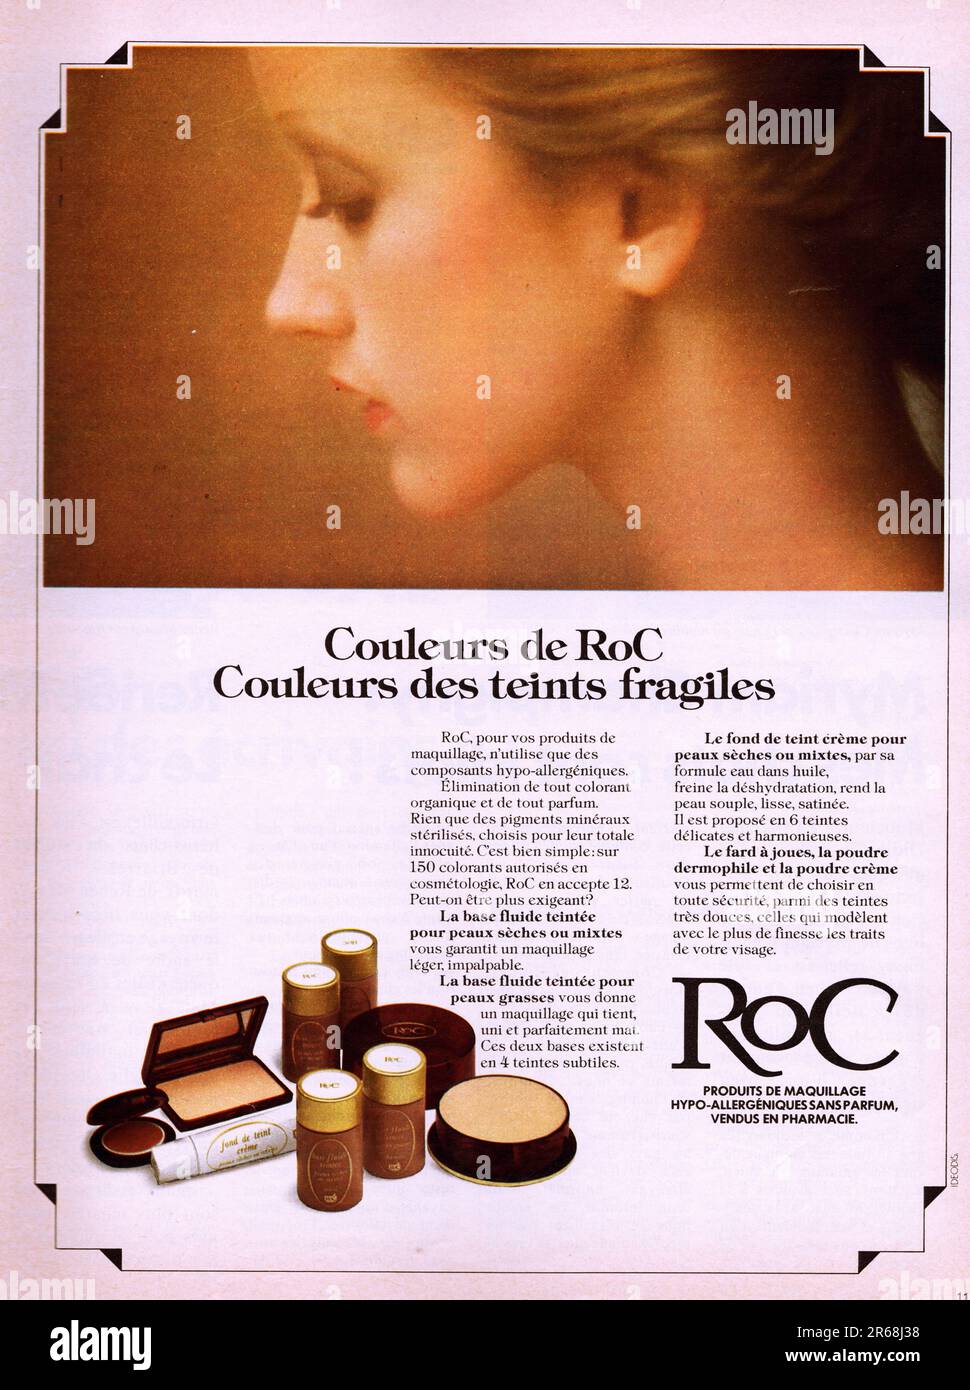 RoC publicite Roc make up French advertisement couleurs de Roc Roc advertising poster RoC vintage magazine commercial Stock Photo